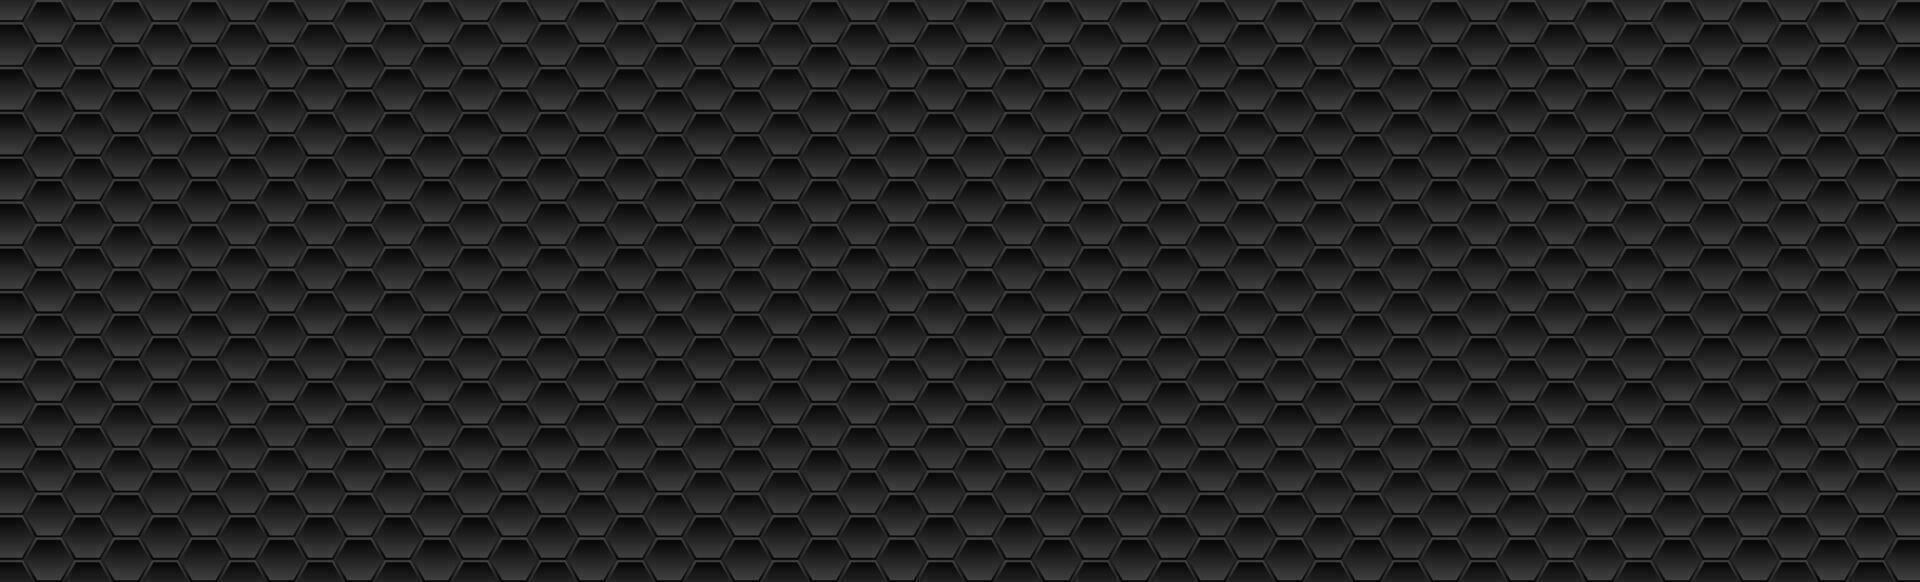 negro hexagonal textura resumen tecnología antecedentes vector